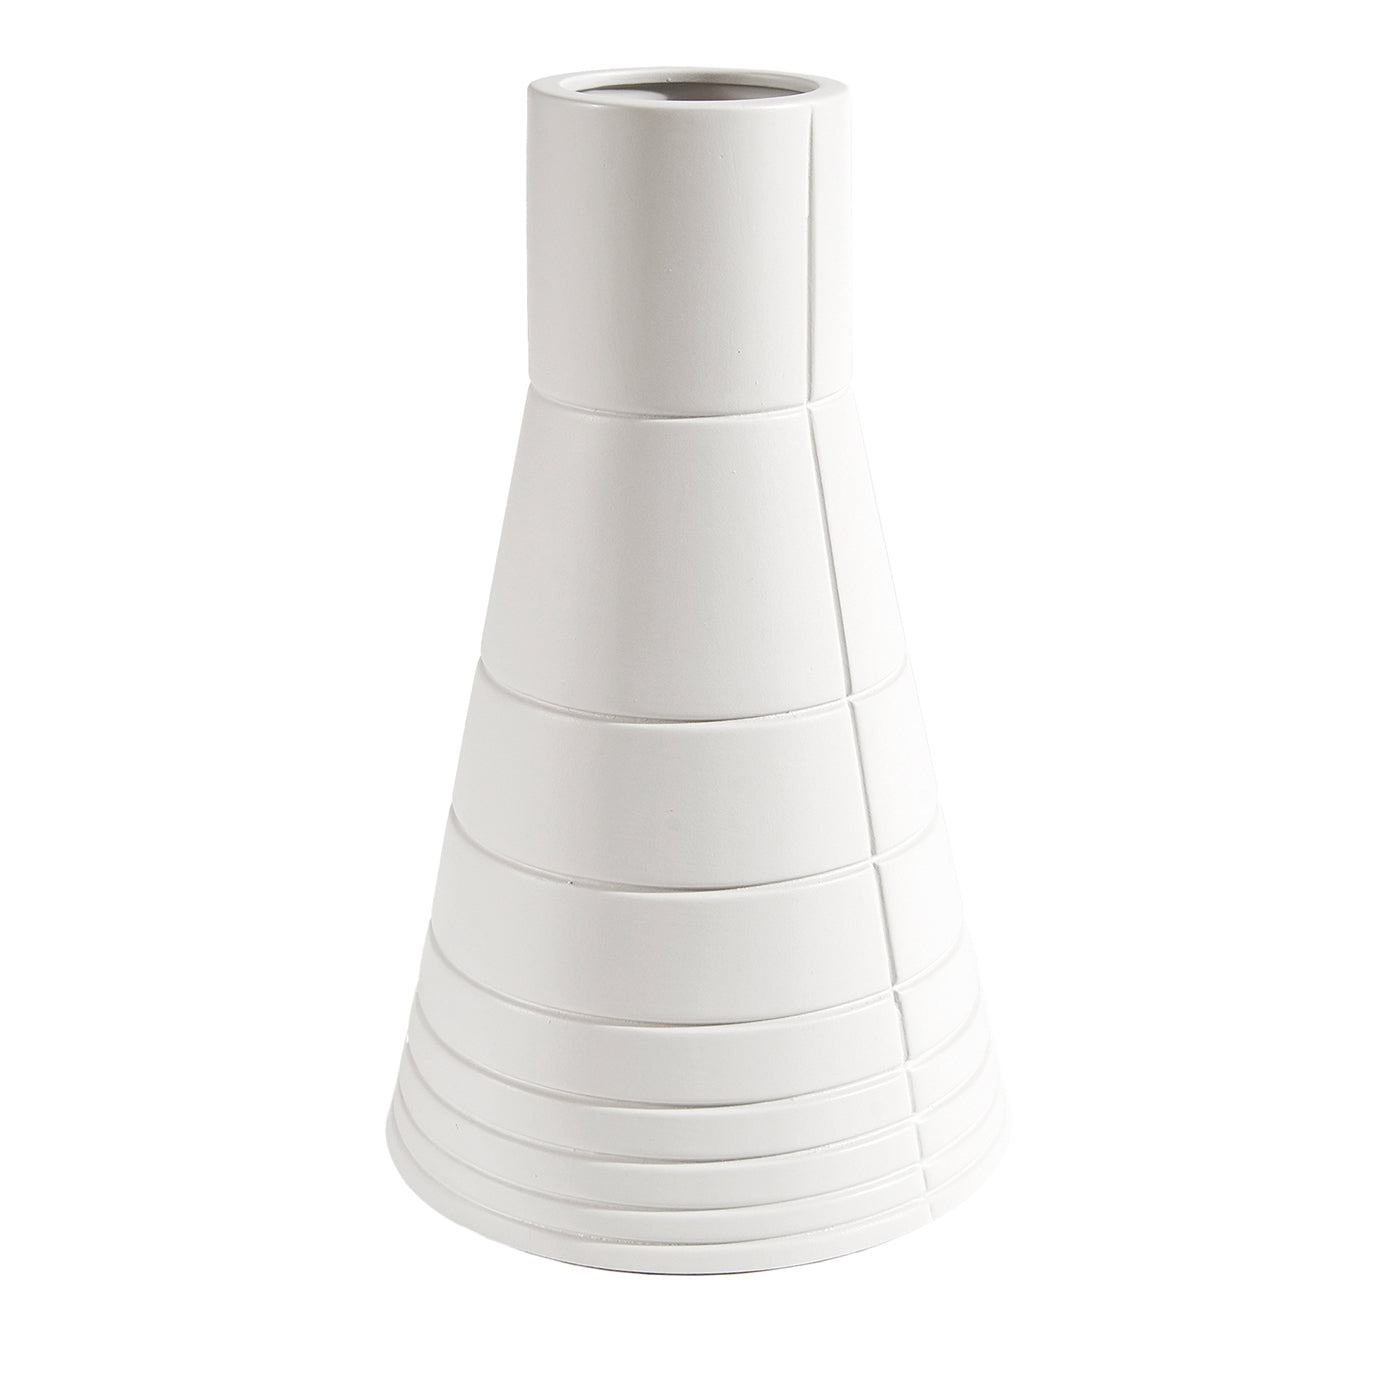 Rikuadra Weiße Keramik-Vase #5 - Hauptansicht